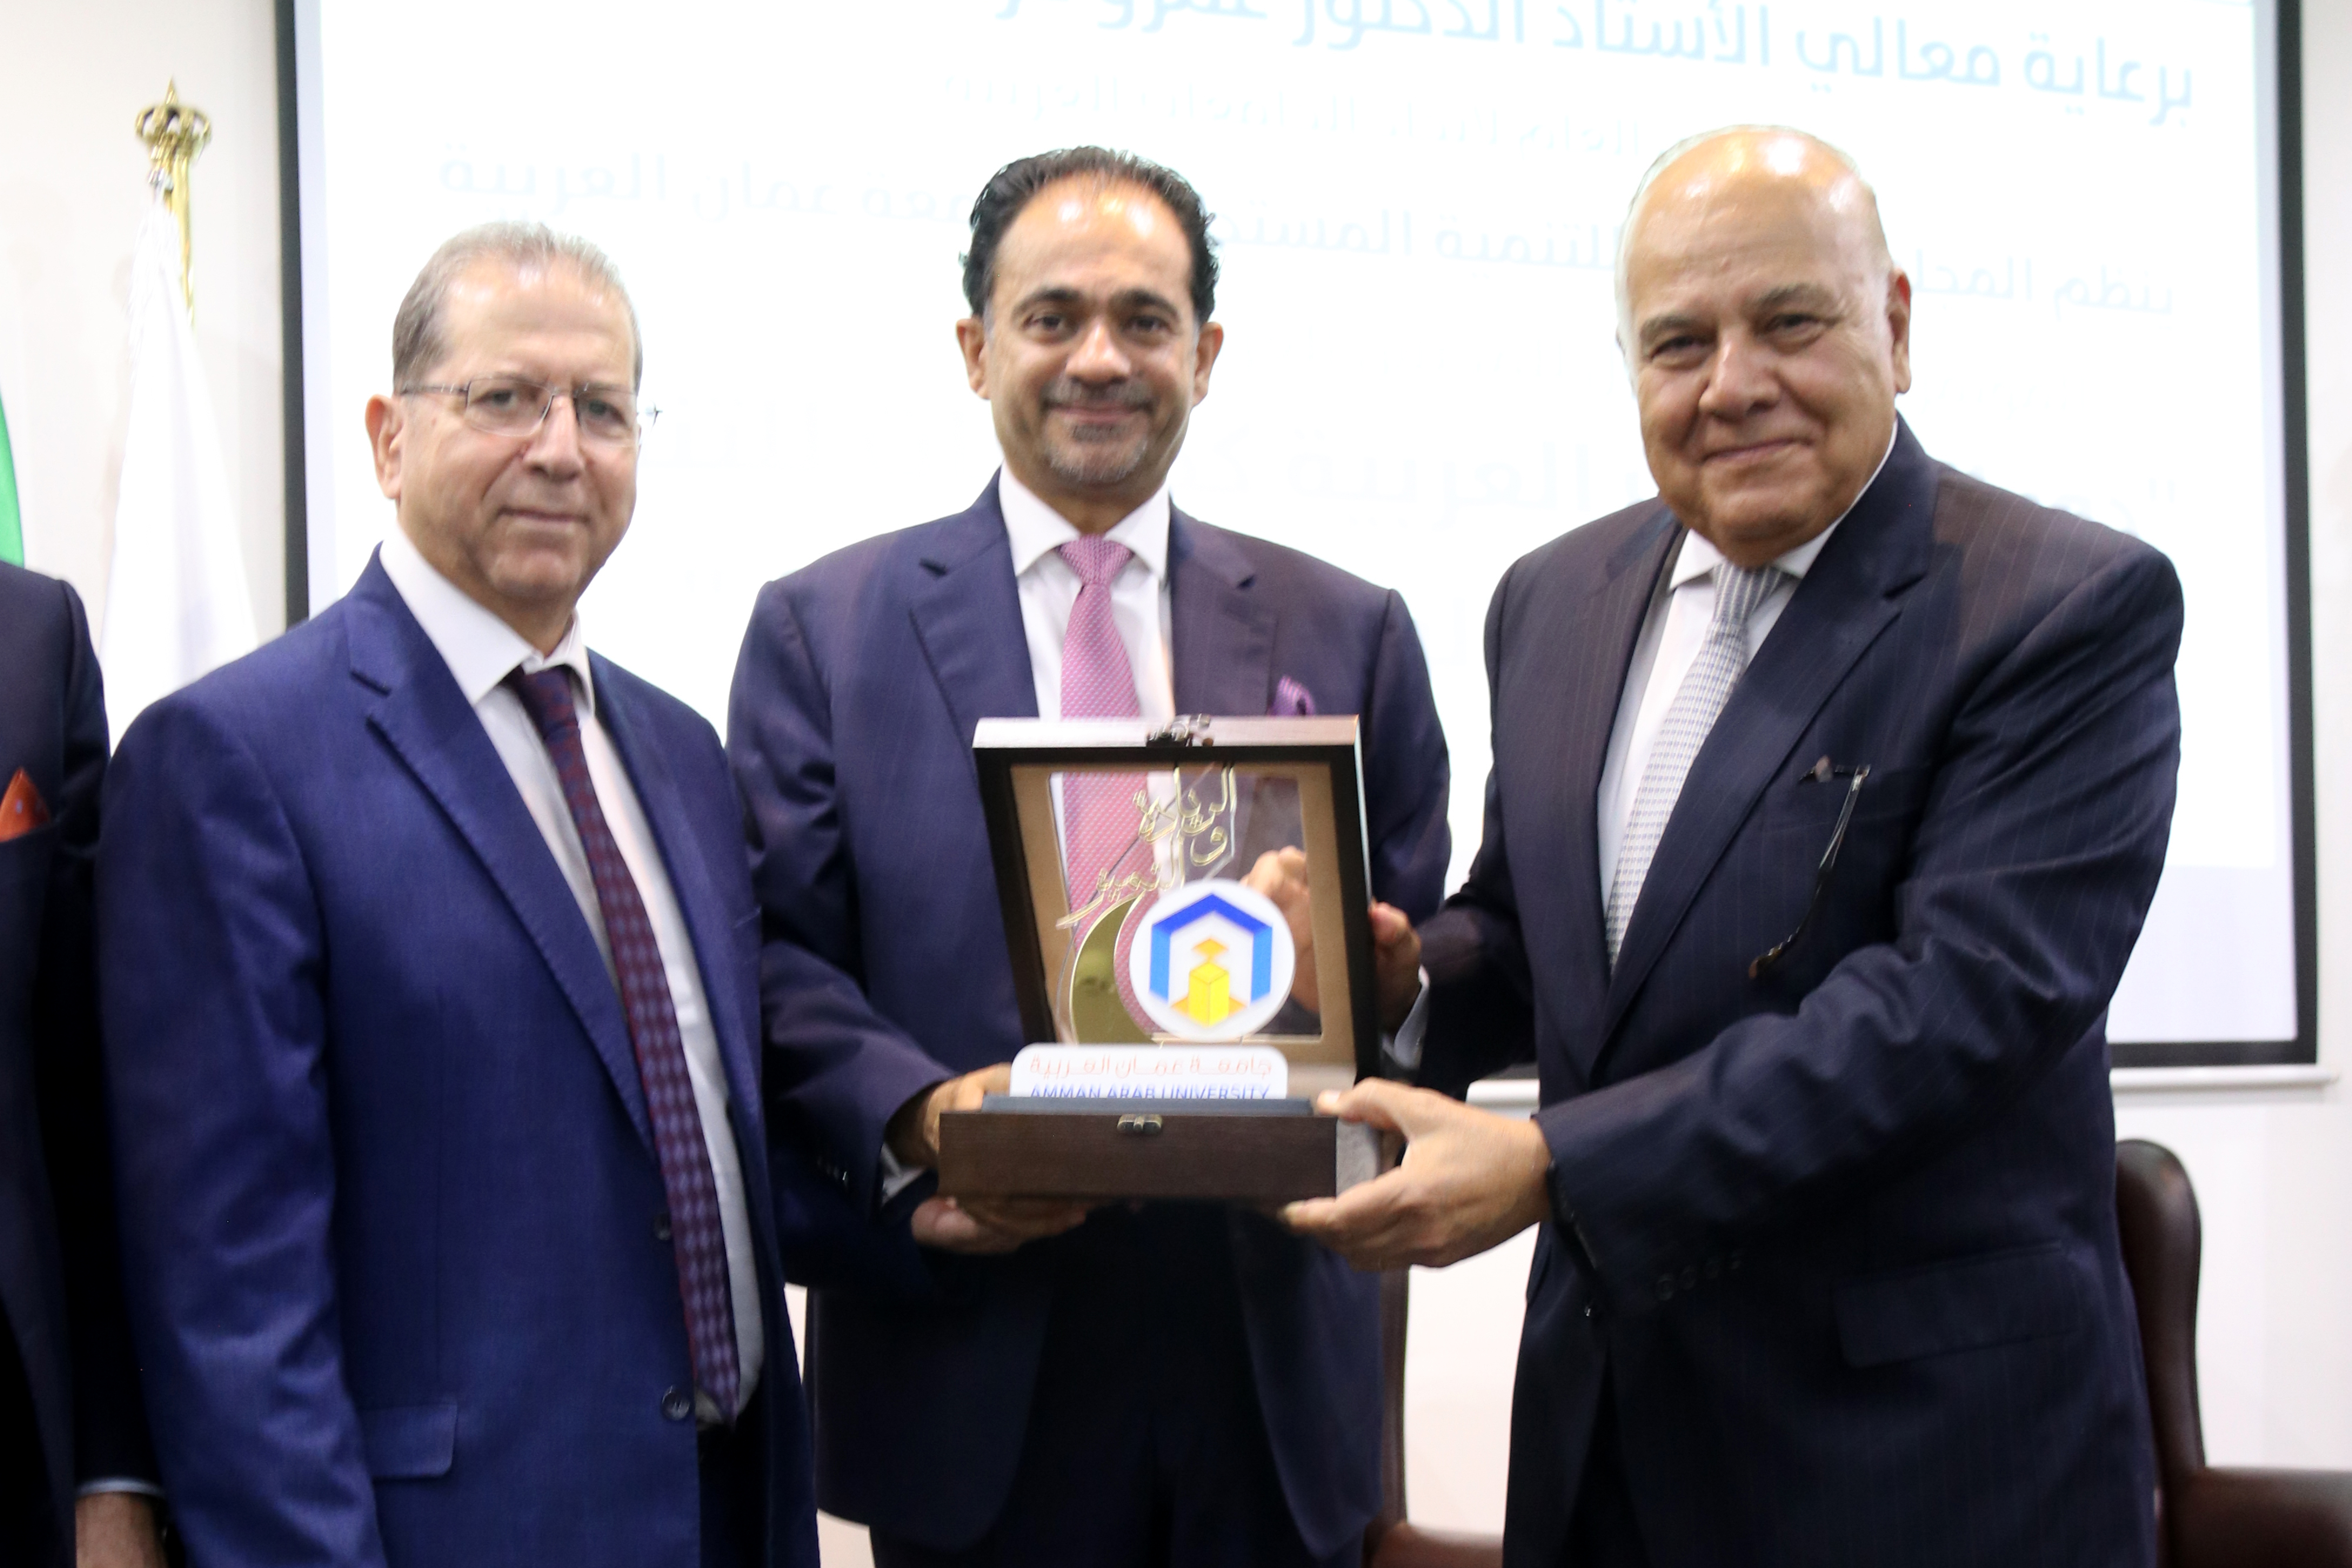 المؤتمر الدولي الأول للمجلس العربي للتنمية المستدامة في رحاب "جامعة عمان العربية"13